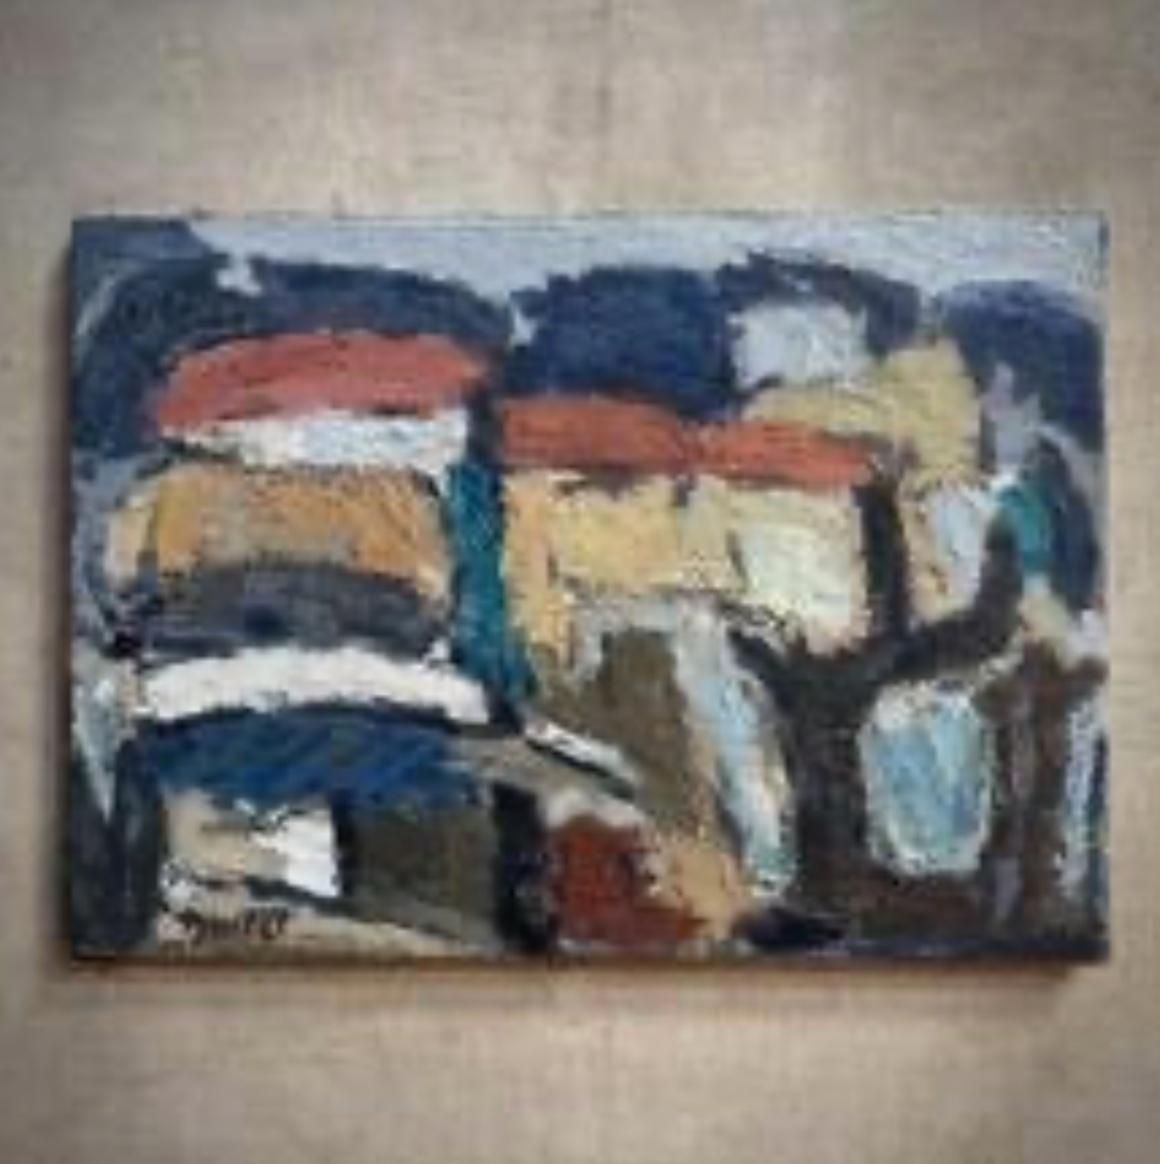 Peinture à l'huile abstraite sur toile signée par le peintre moderniste français Marcel Ducret. Faiblement évocatrice d'un paysage, la peinture est audacieuse, graphique et texturée, avec une utilisation expressive de la technique de l'empâtement.